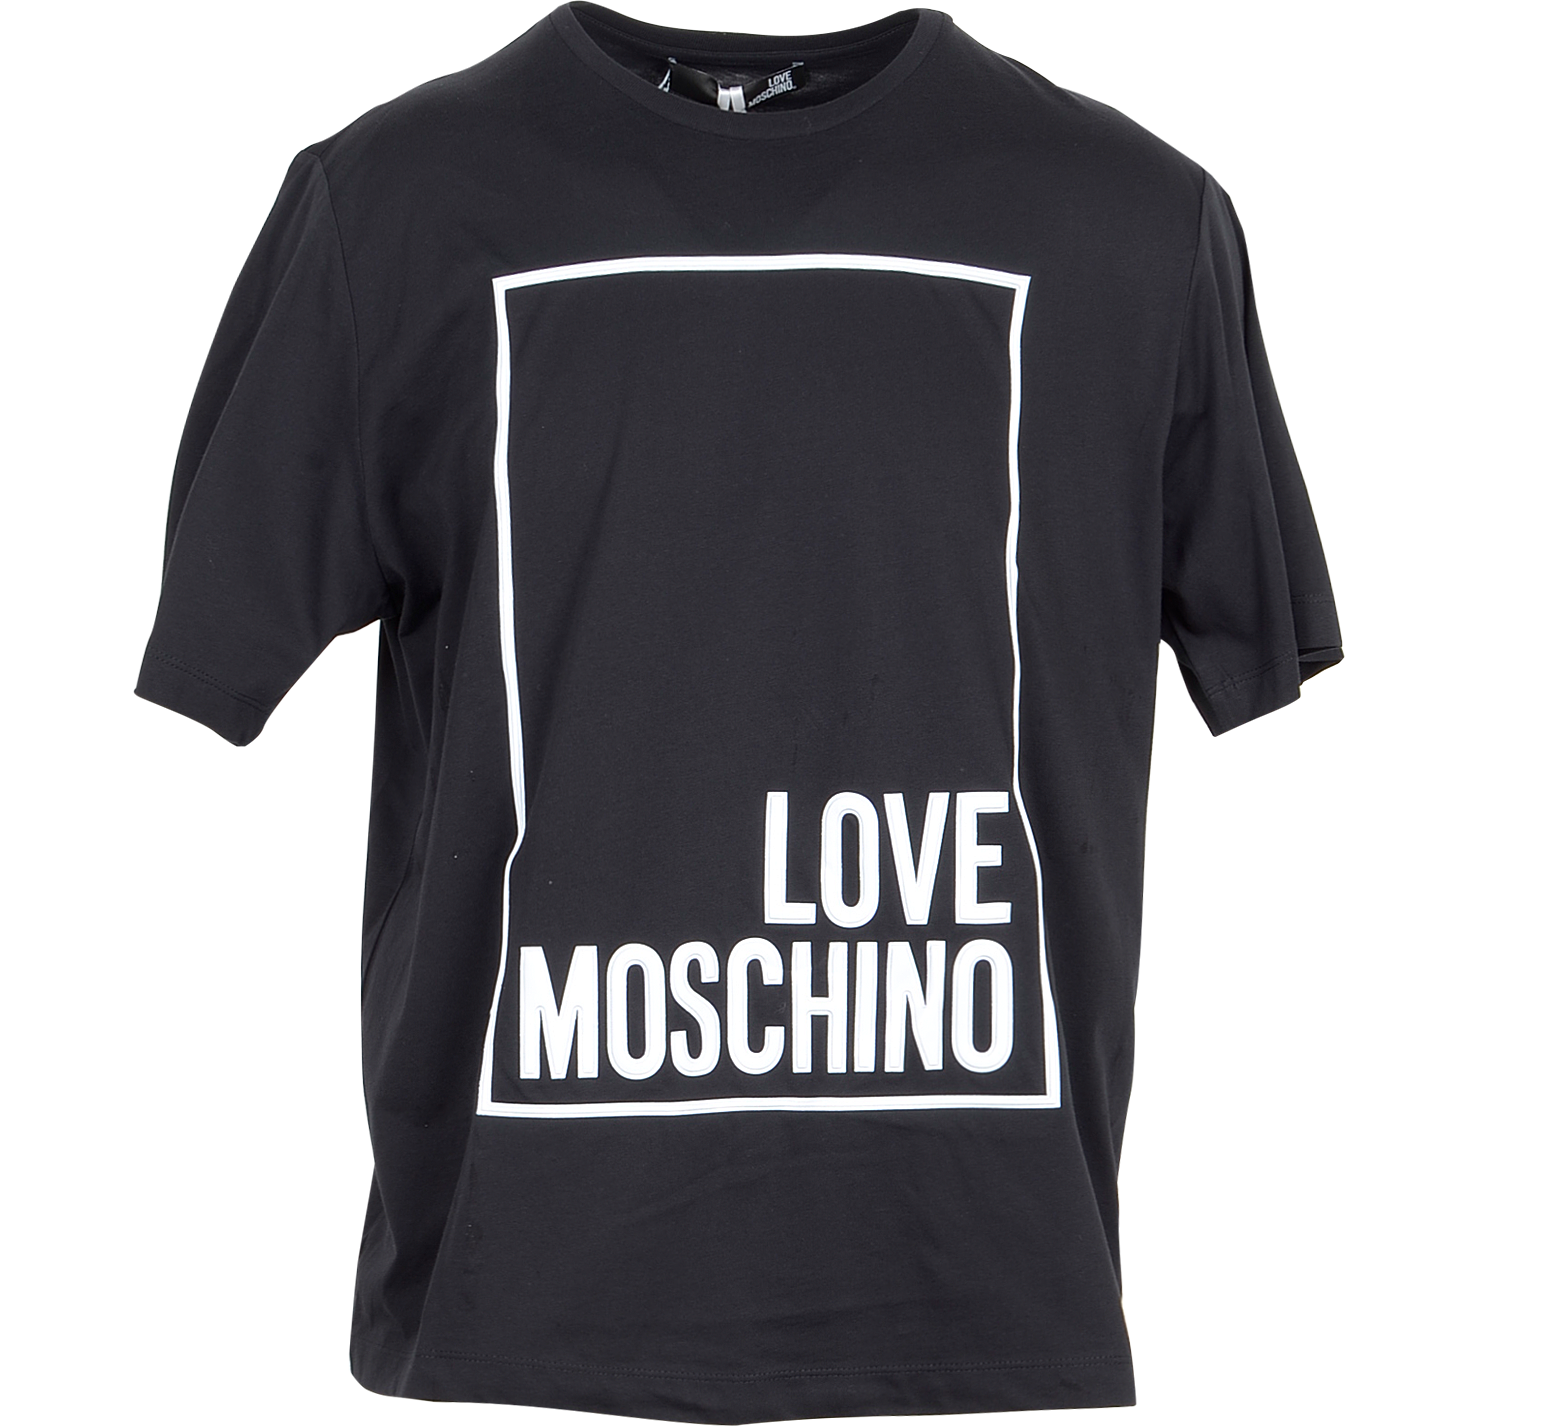 moschino t shirt women's